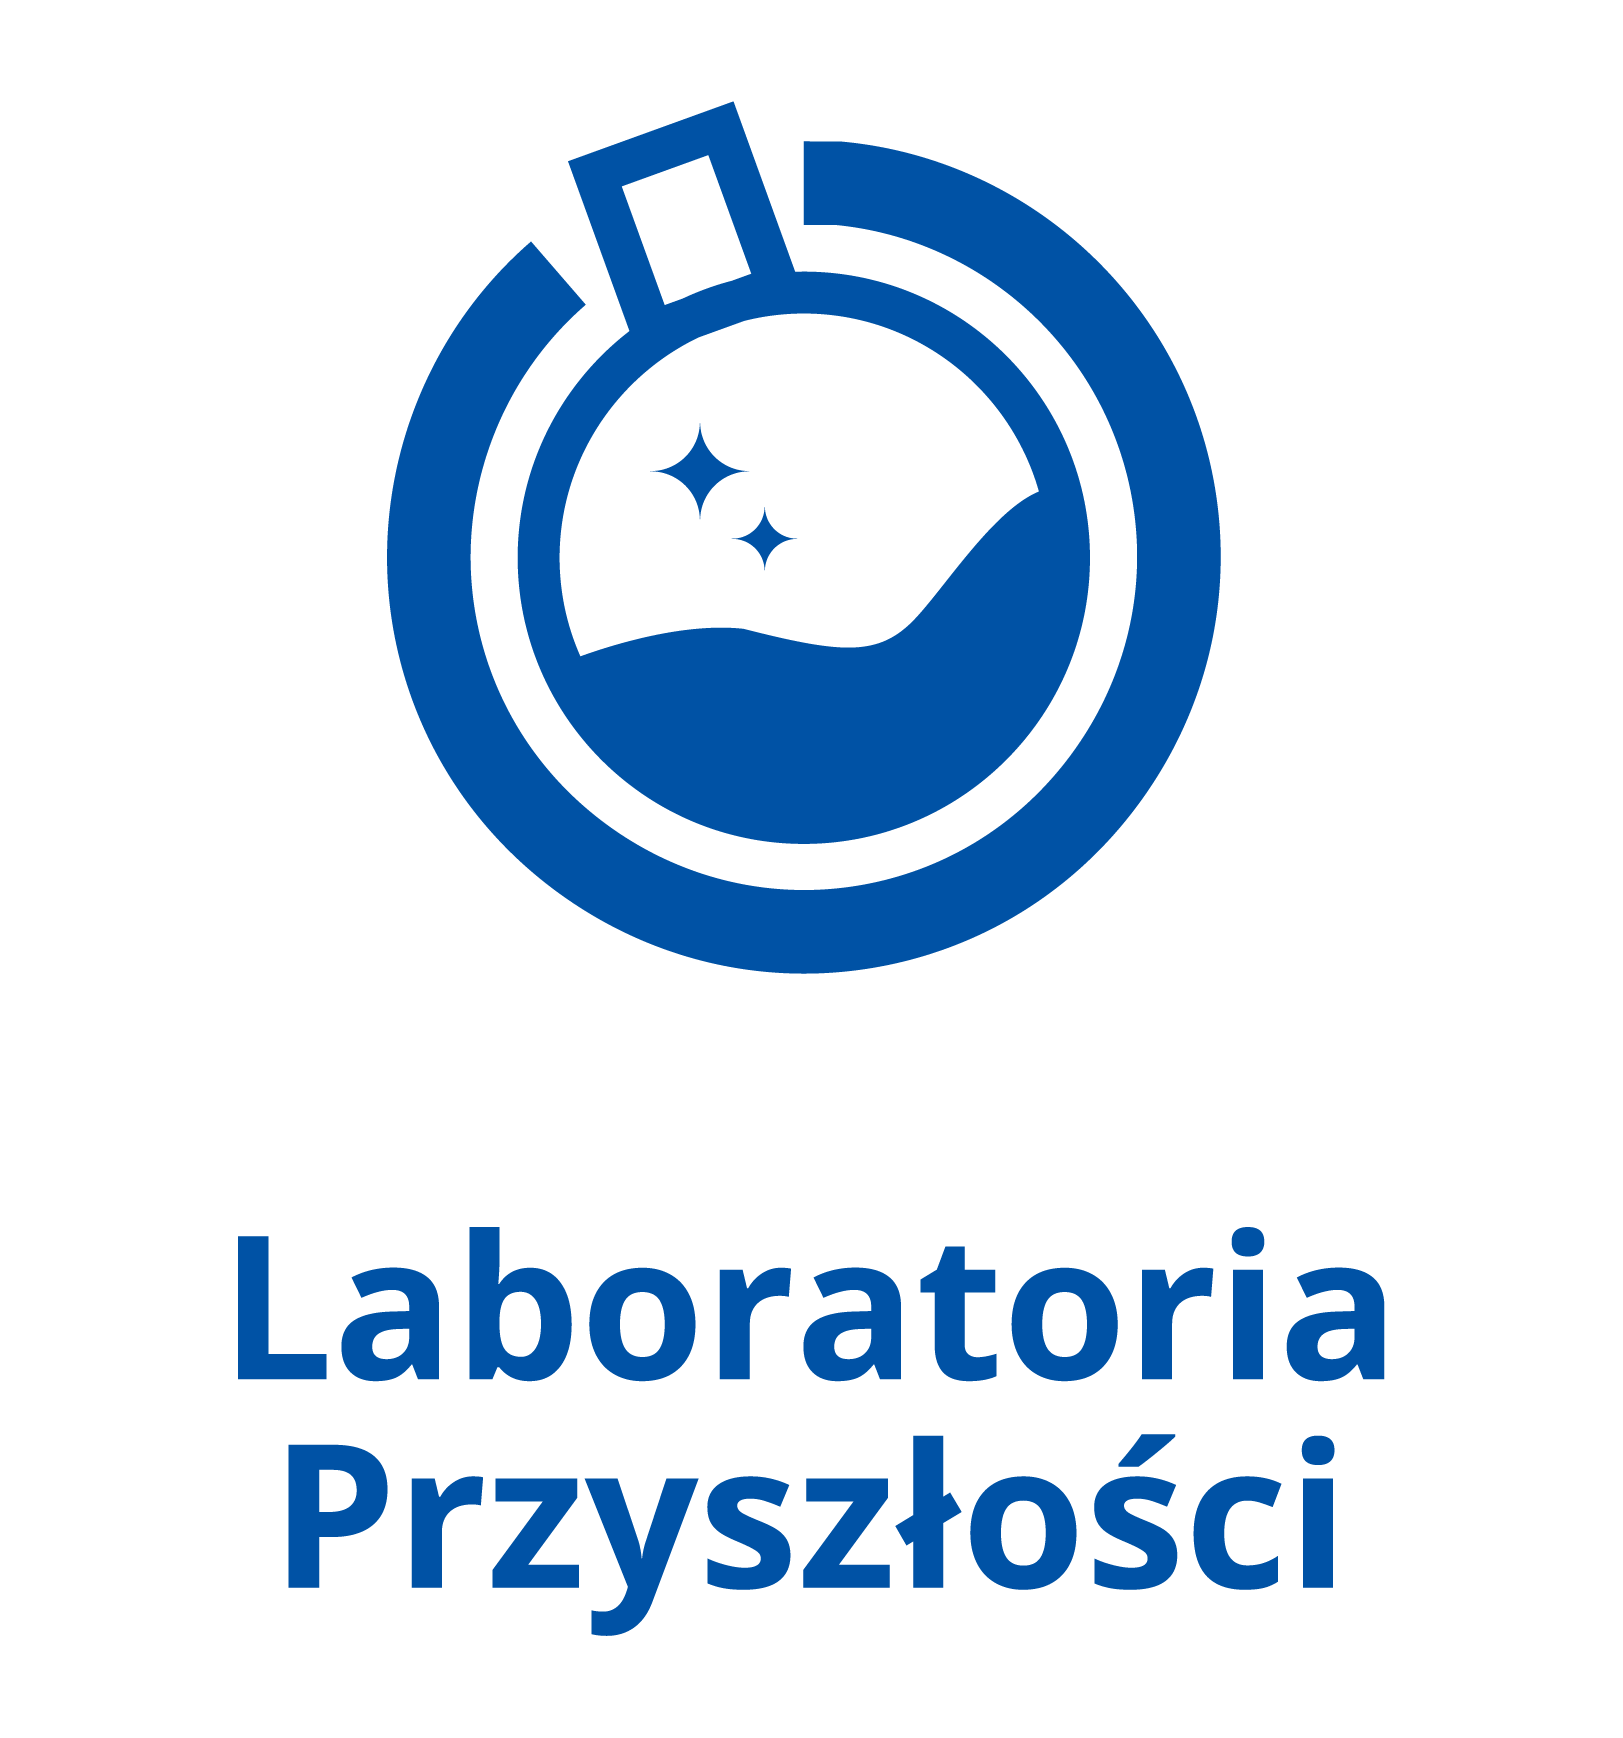 logo Laboratoria Przyszoci pion kolor